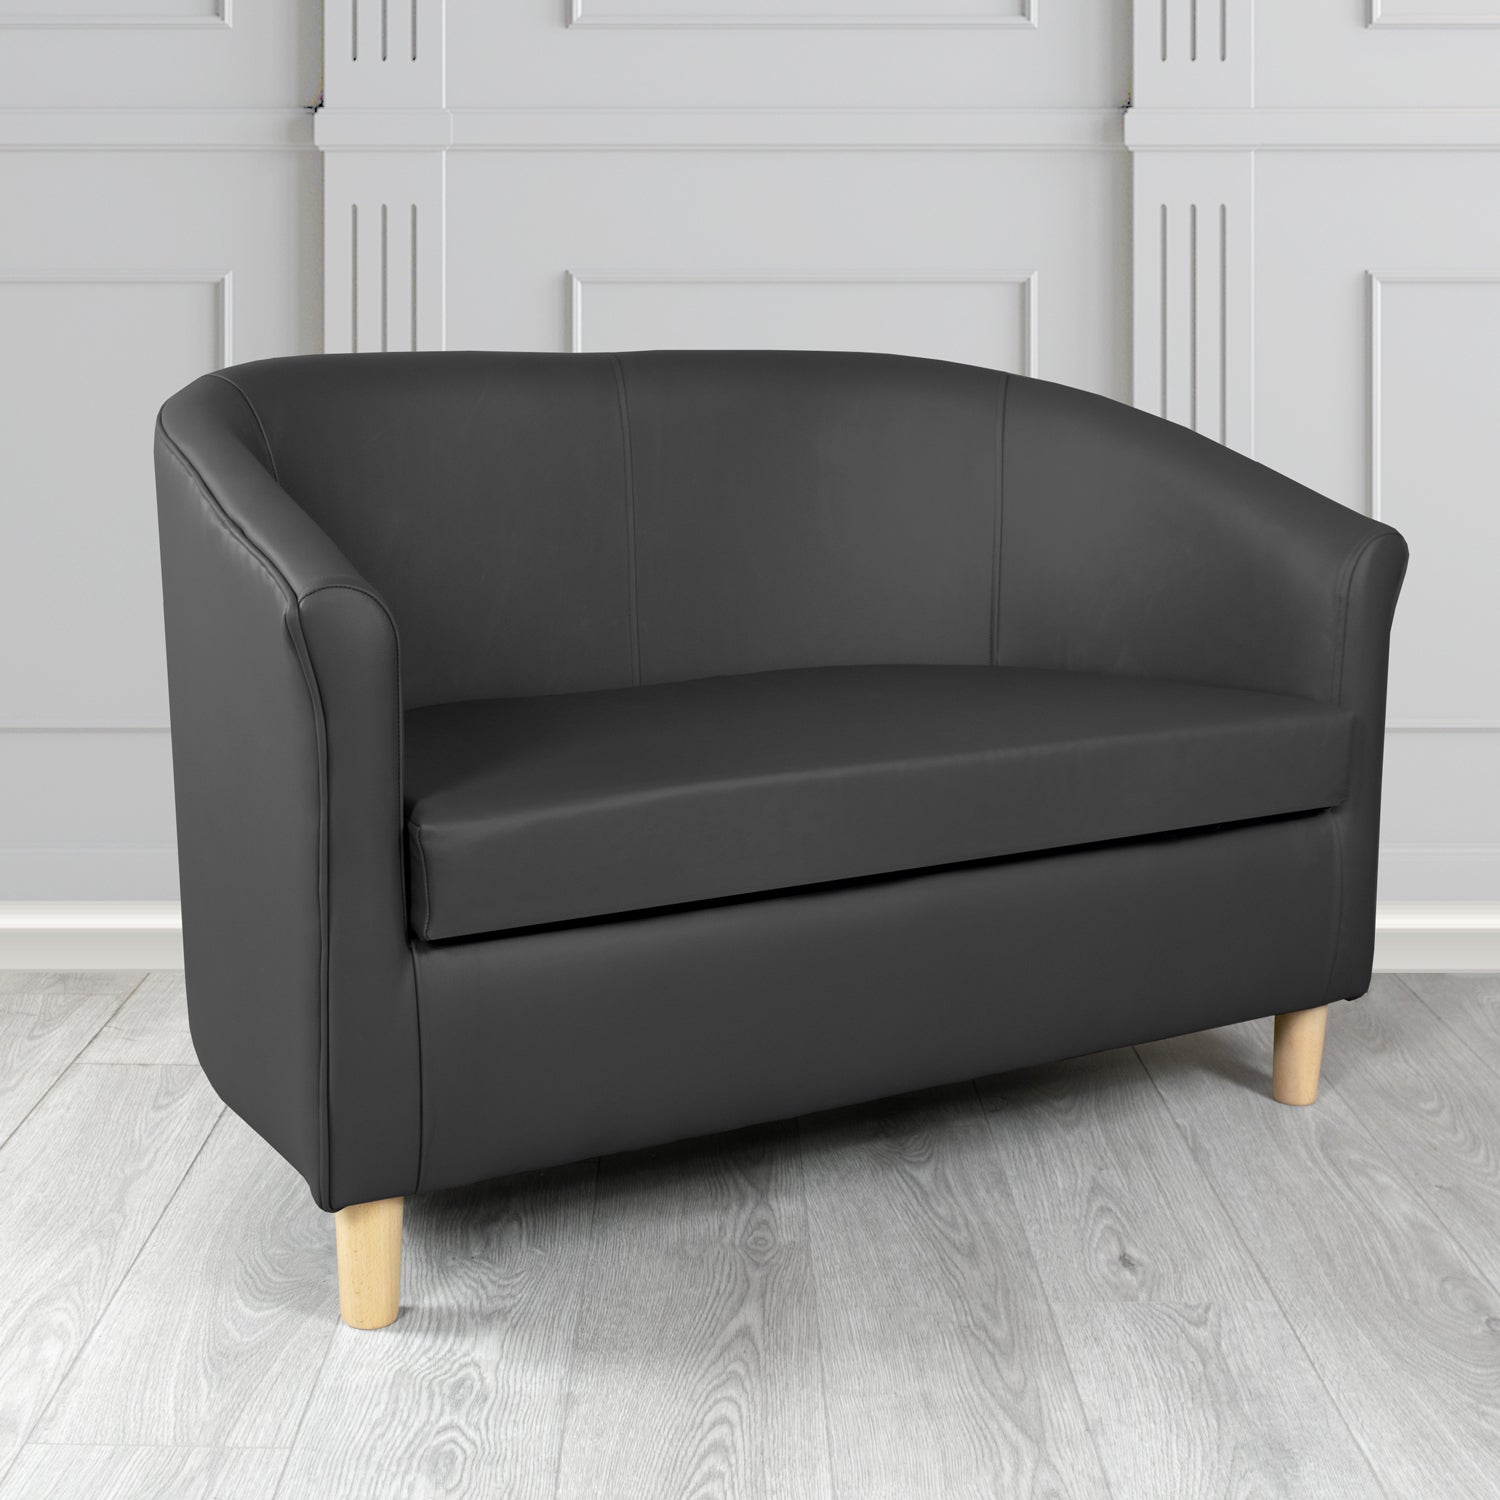 Tuscany Shelly Black Crib 5 Genuine Leather 2 Seater Tub Sofa - The Tub Chair Shop